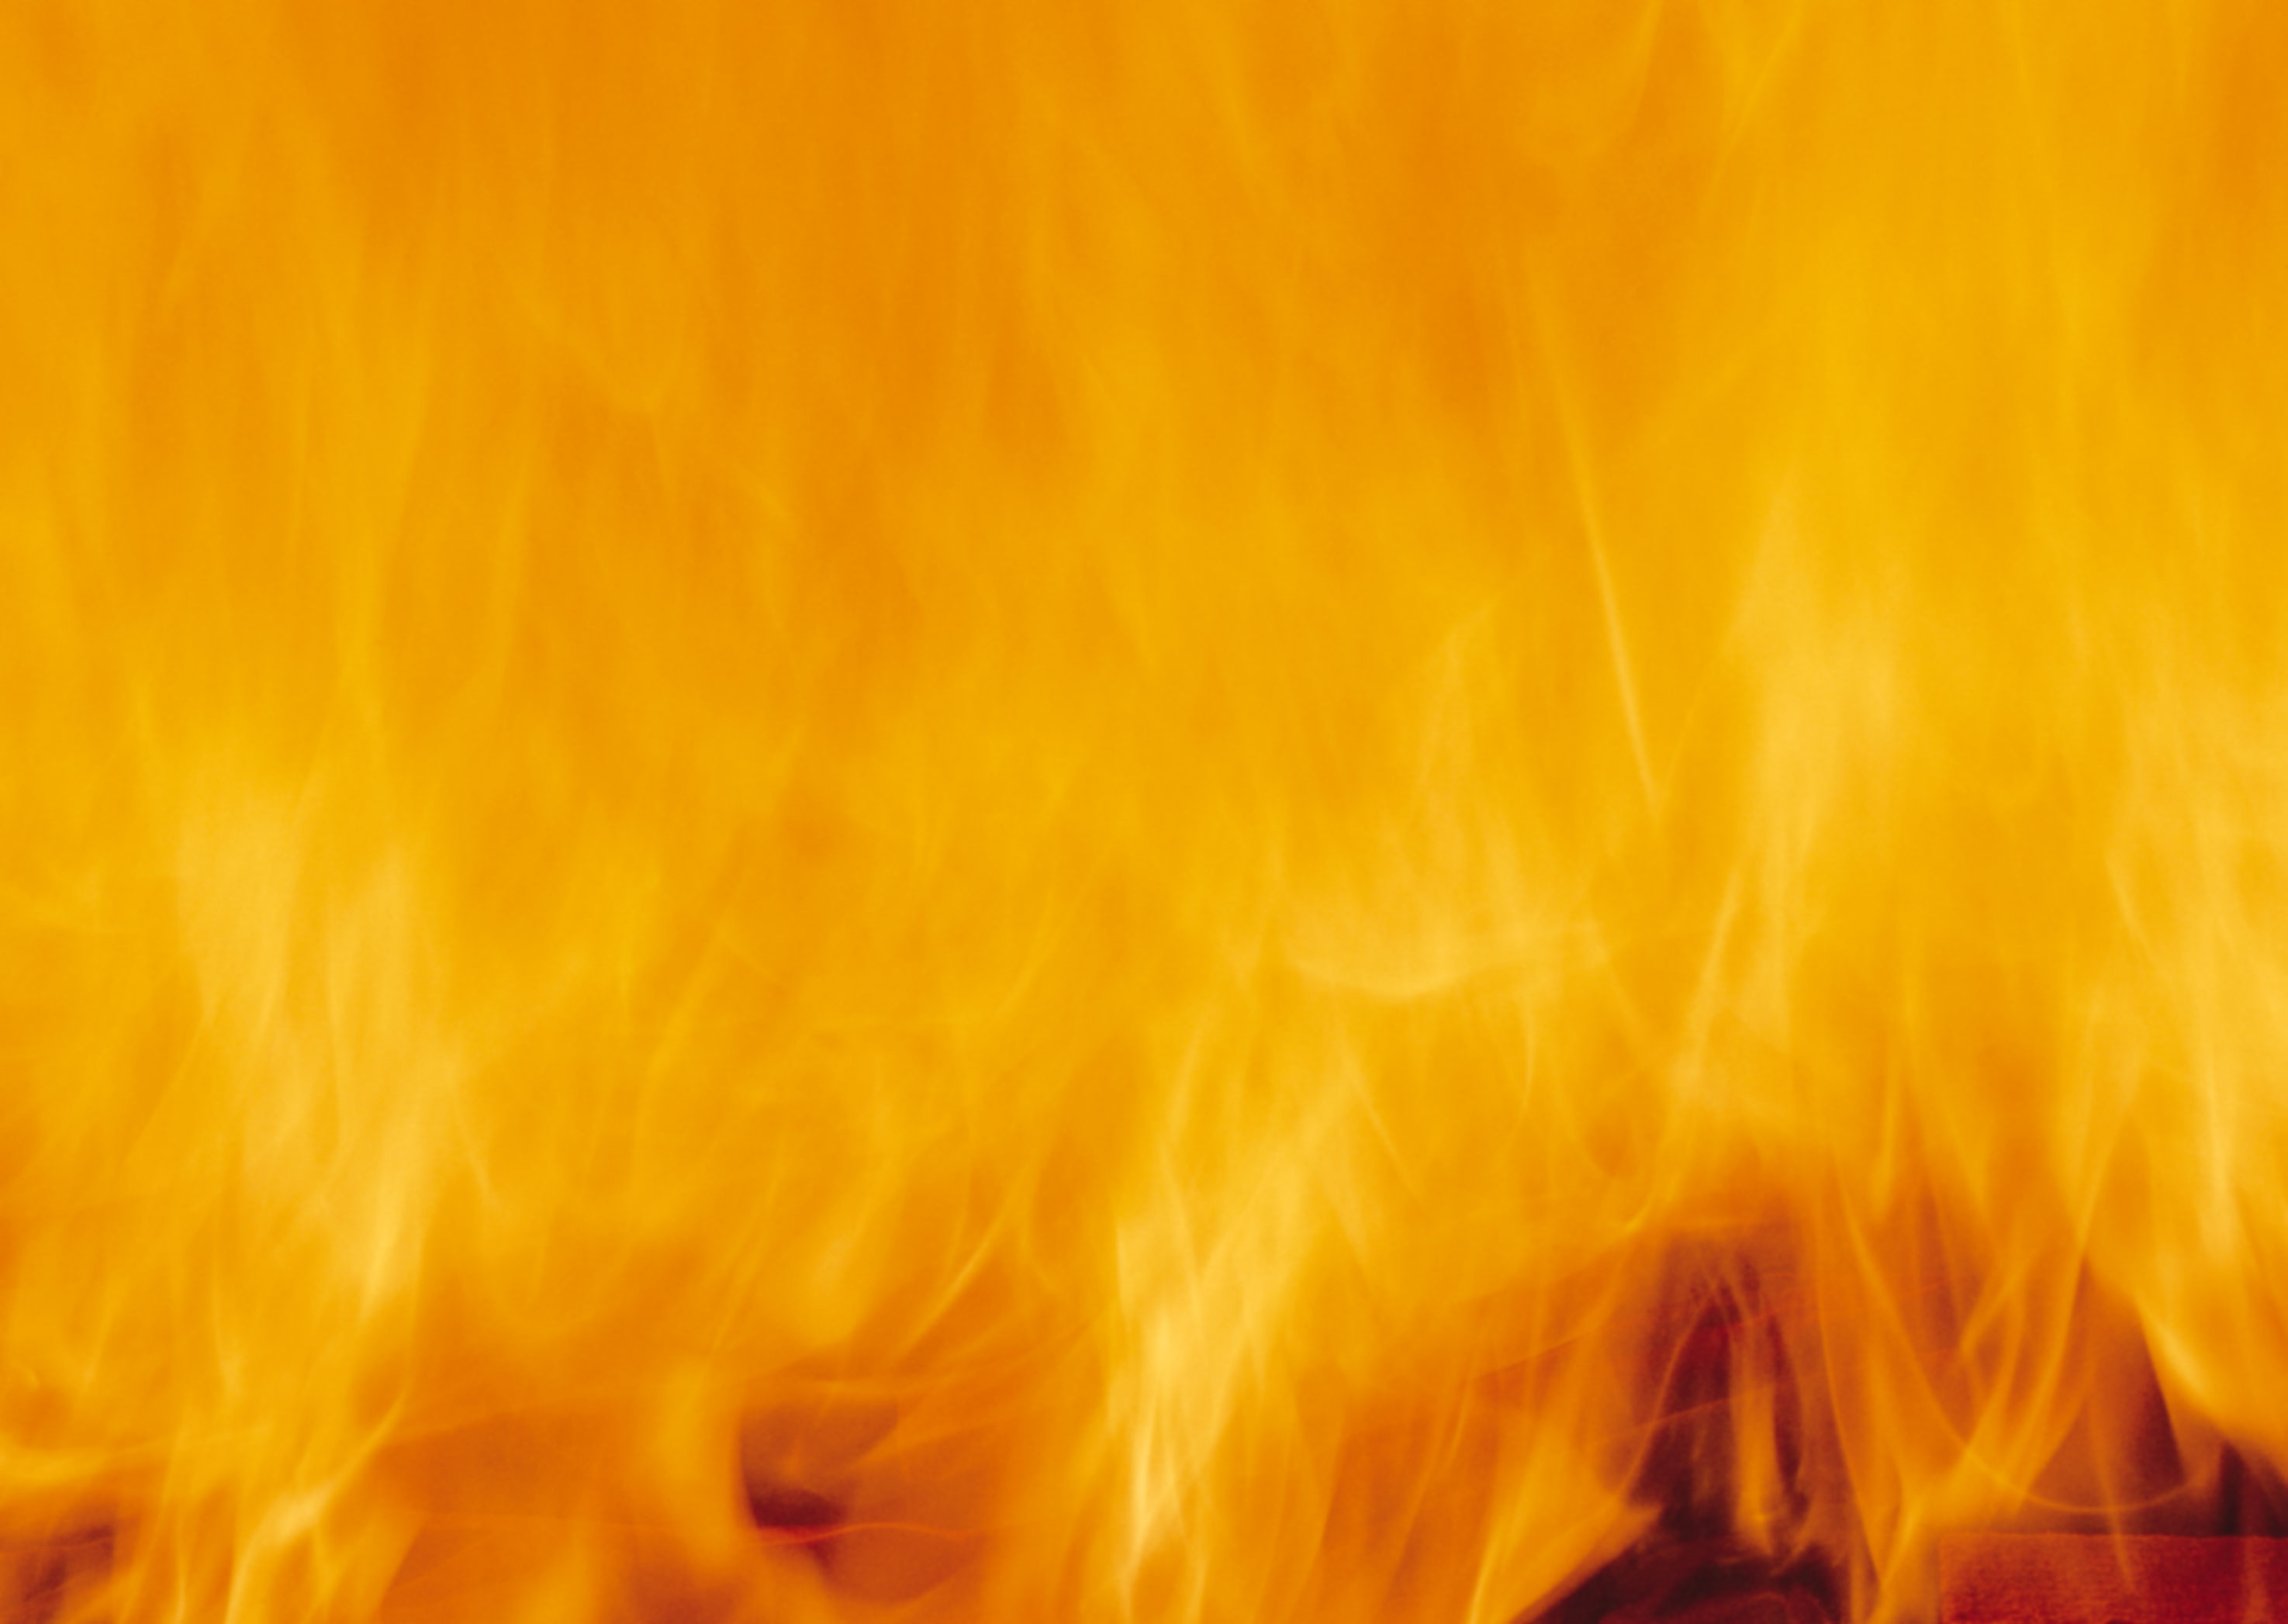 огонь, текстура, огня, пламя, fire background texture, скачать фото, фон, языки пламени